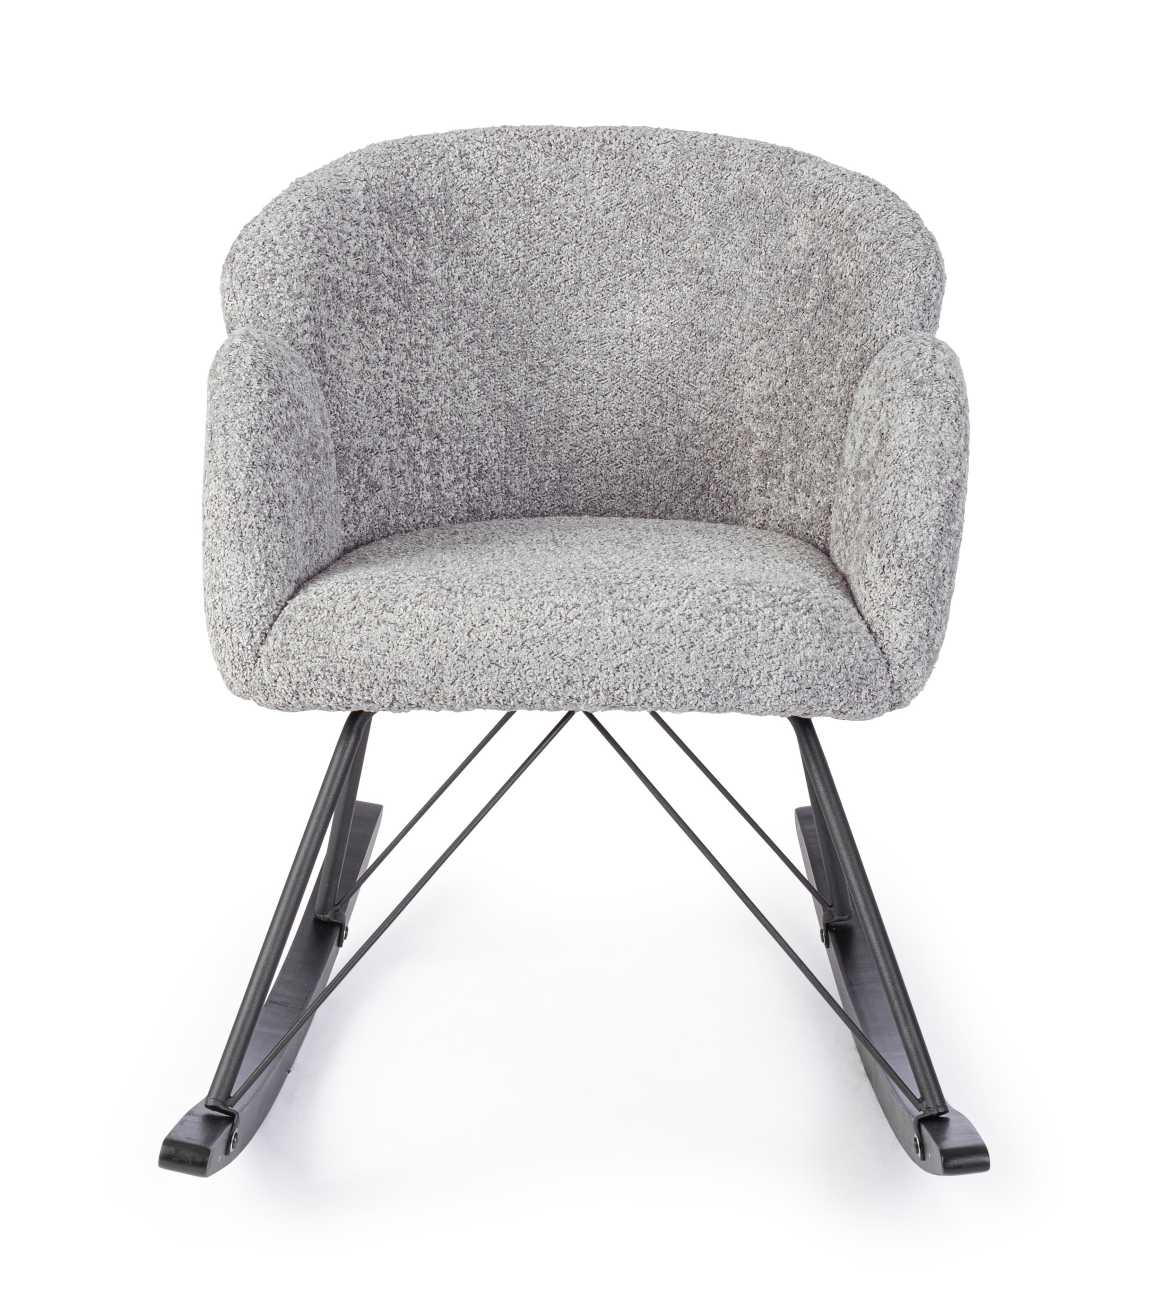 Der Schaukelsessel Sibilla überzeugt mit seinem modernen Stil. Gefertigt wurde er aus Stoff, welcher einen hellgrauen Farbton besitzt. Das Gestell ist aus Metall und hat eine schwarze Farbe. Der Sessel besitzt eine Sitzhöhe von 48 cm.